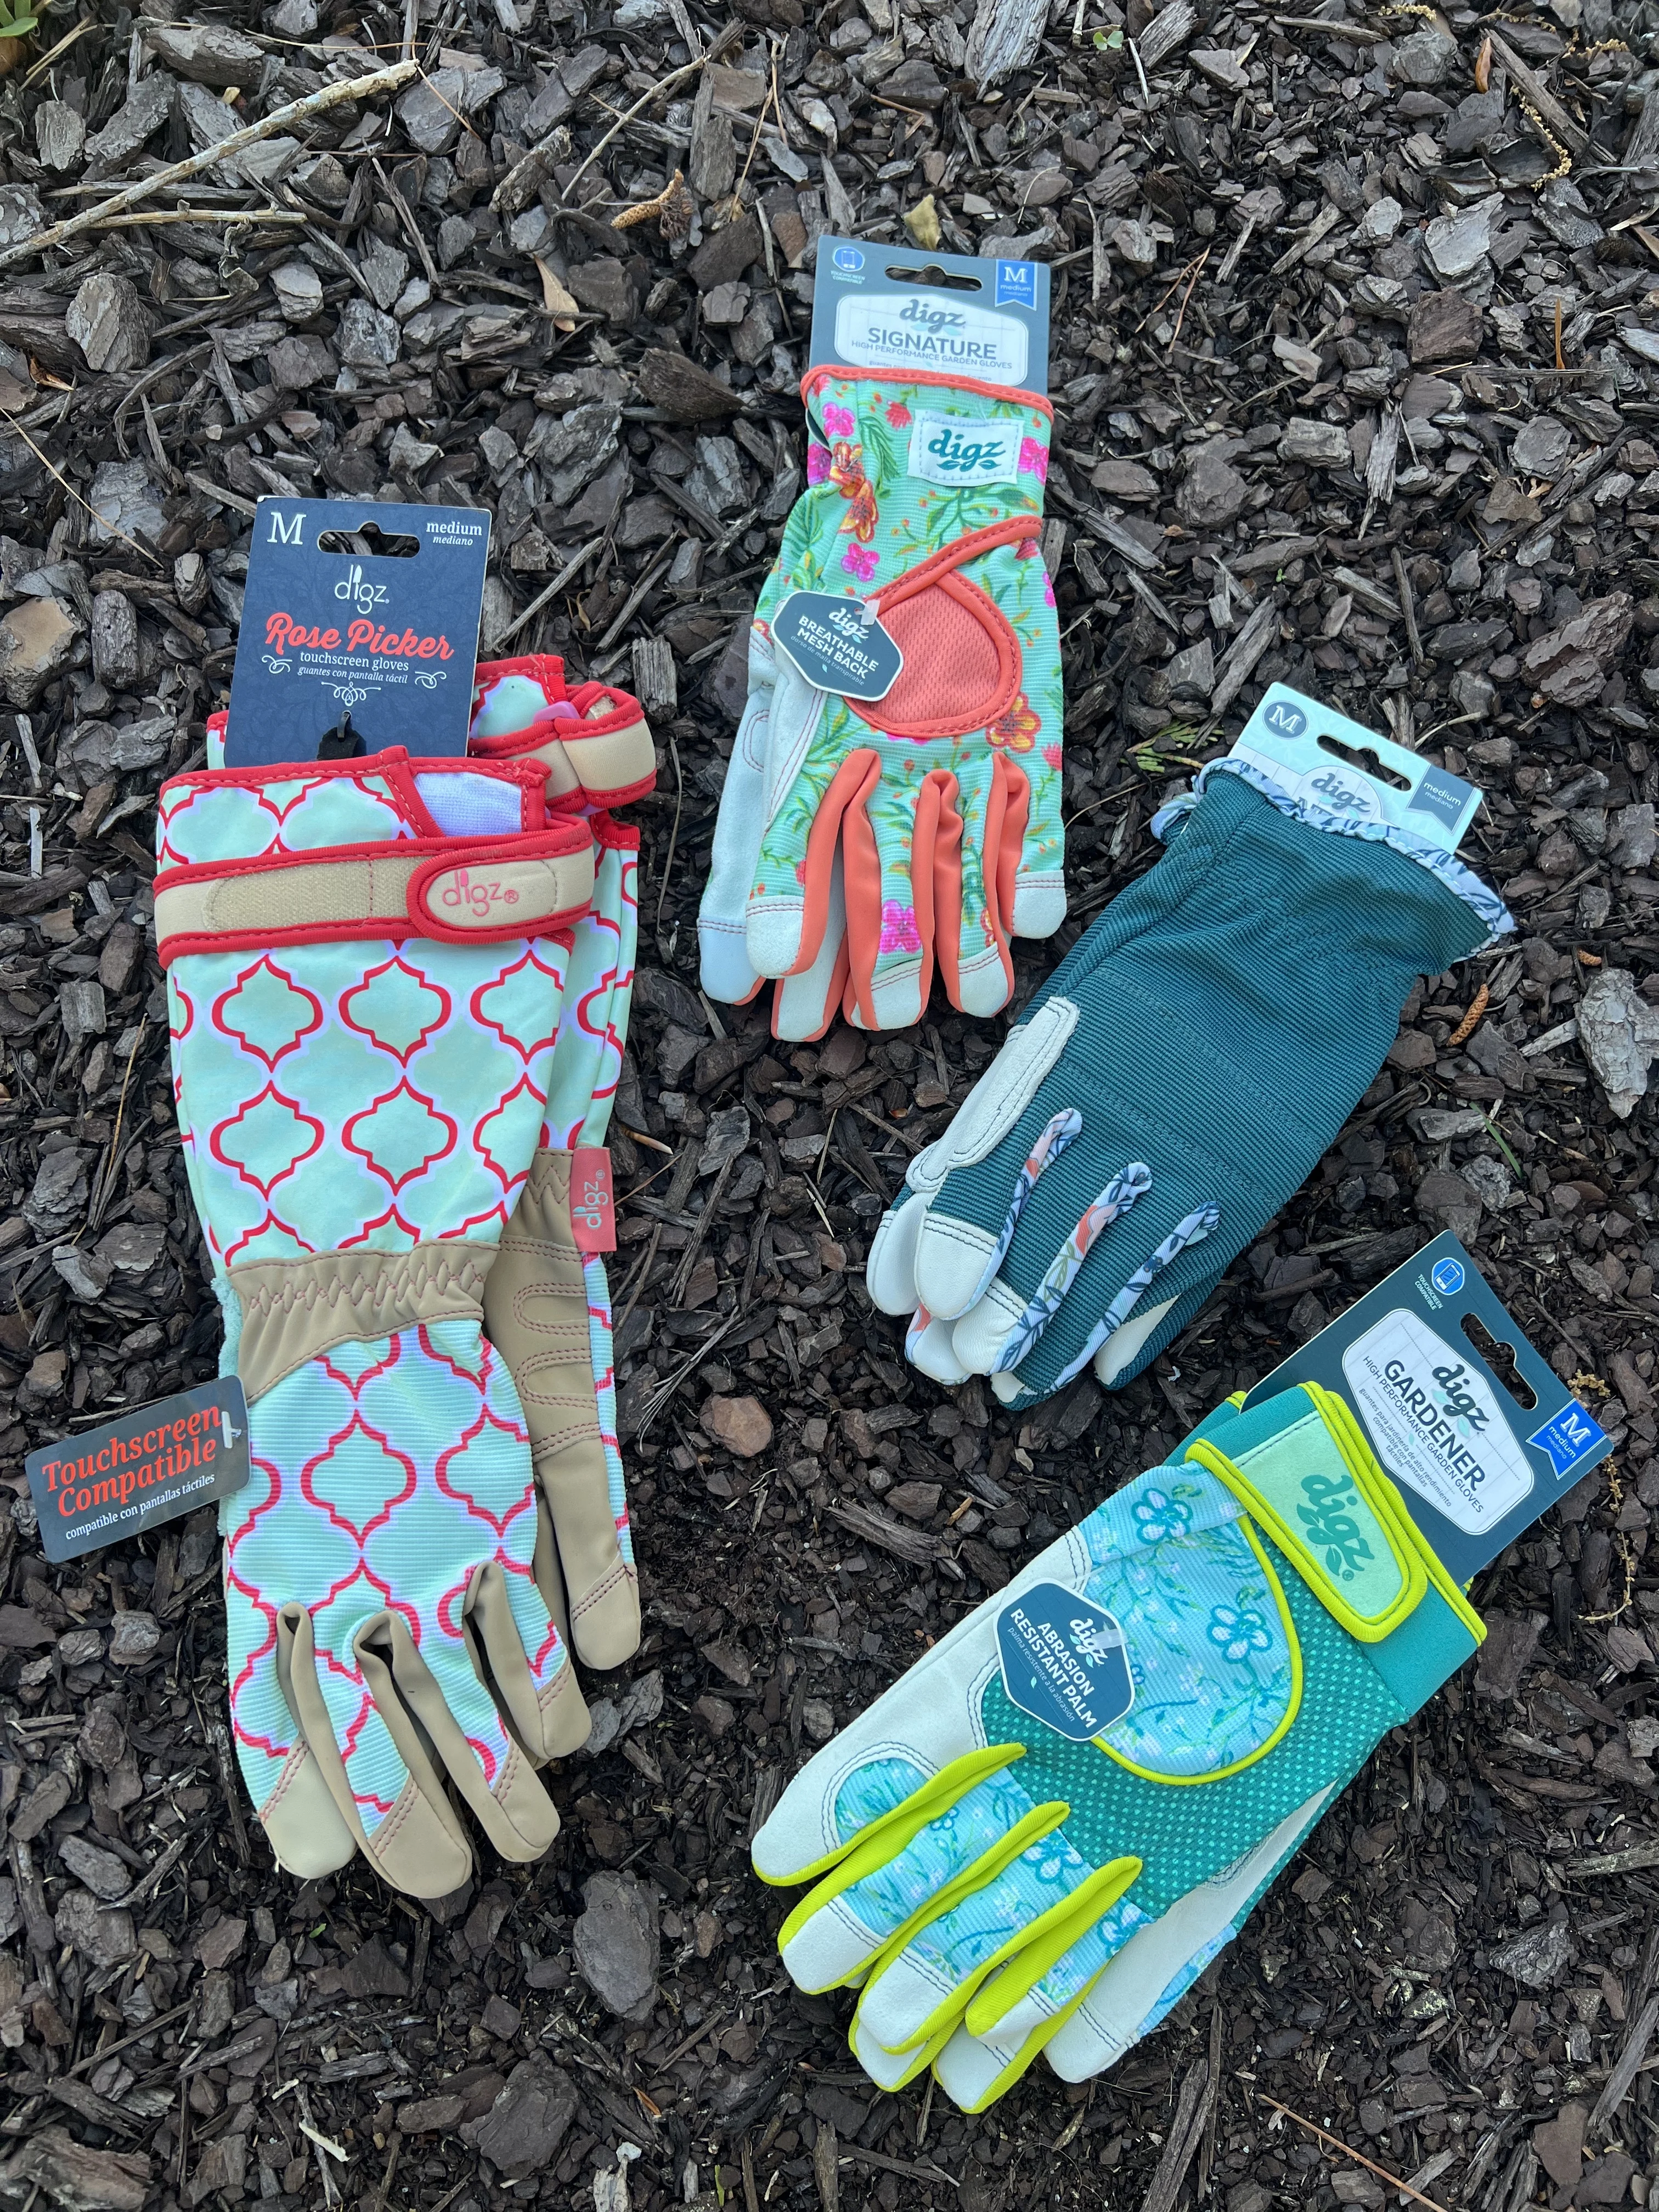 digz gardening gloves